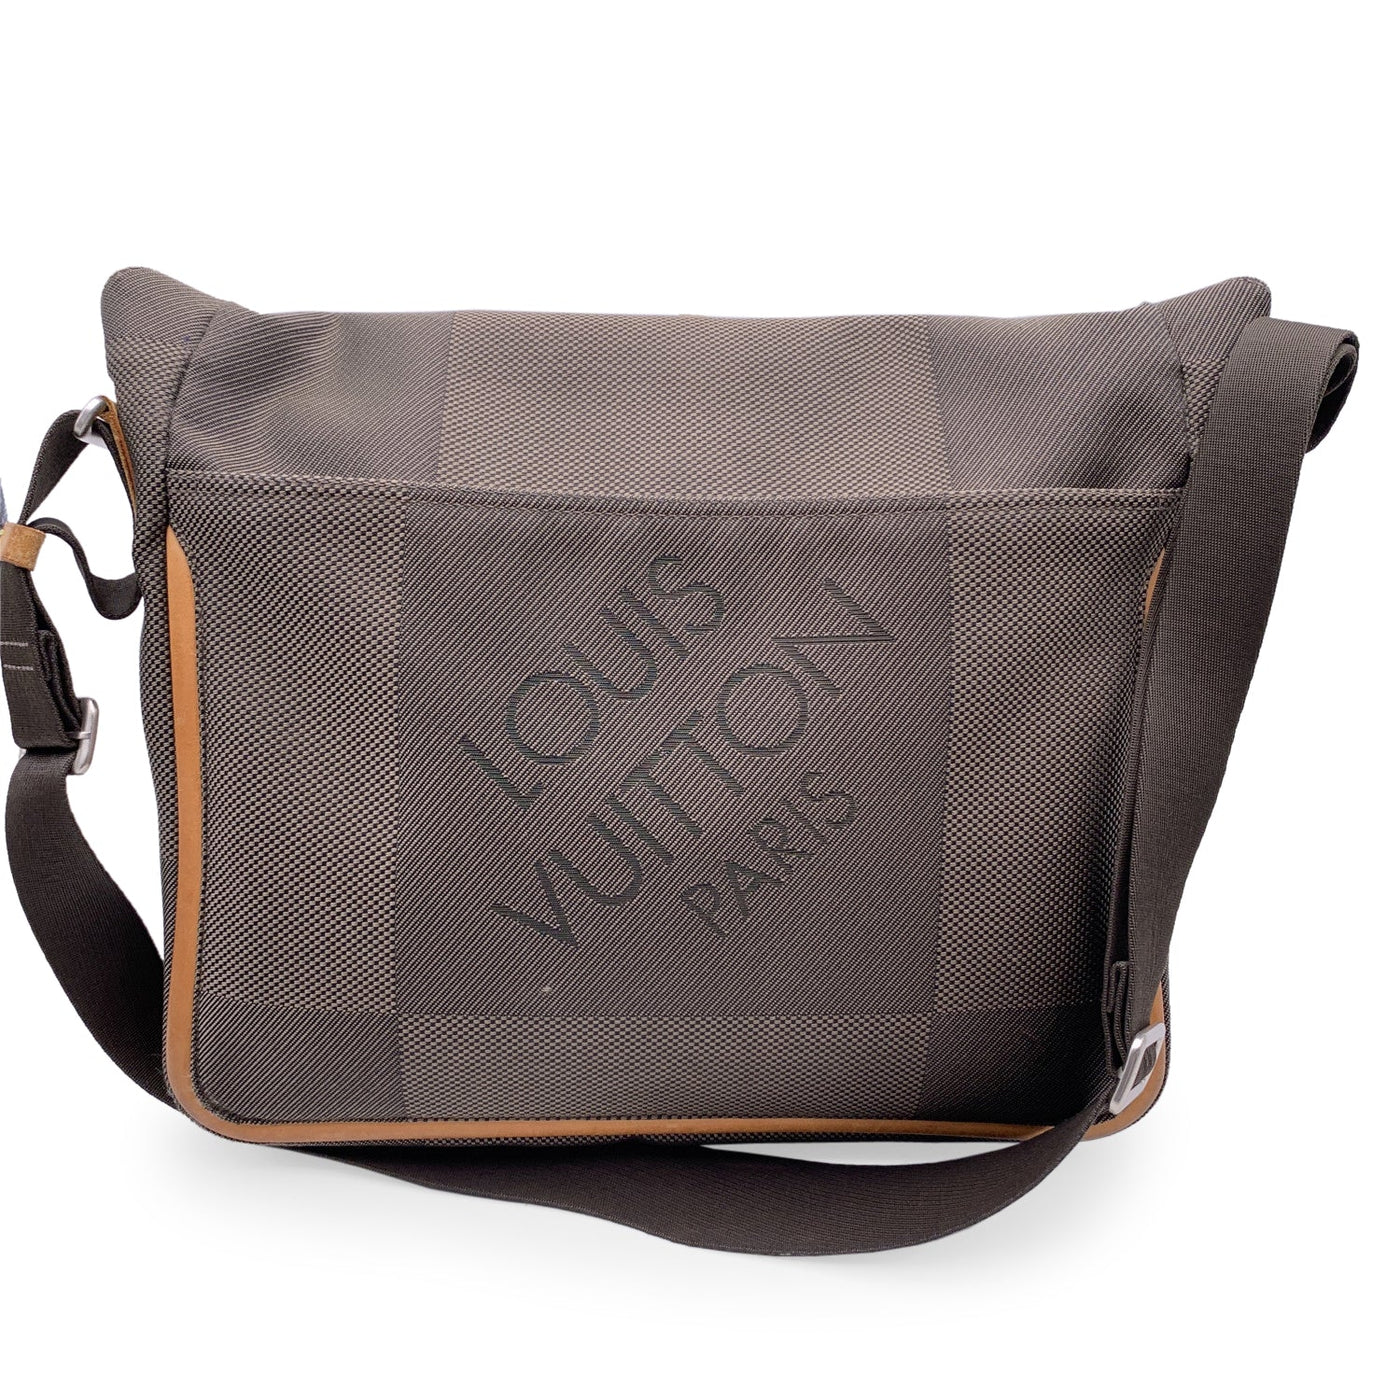 Terre damier geant messenger cloth satchel Louis Vuitton Black in